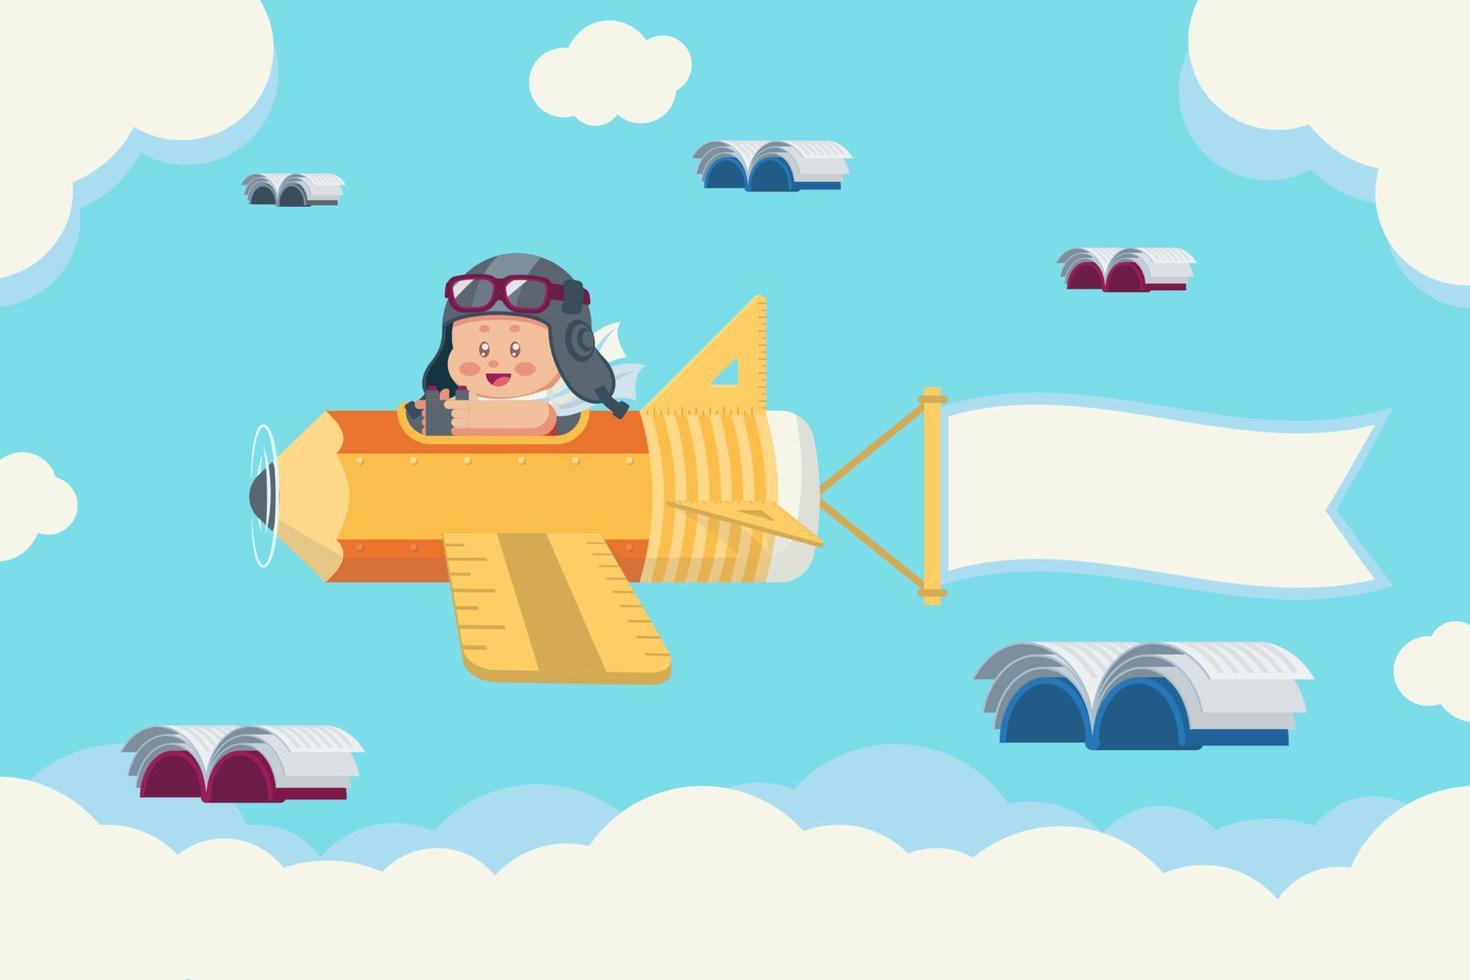 garçon sur avion de papeterie avec des livres volants dans le ciel vecteur